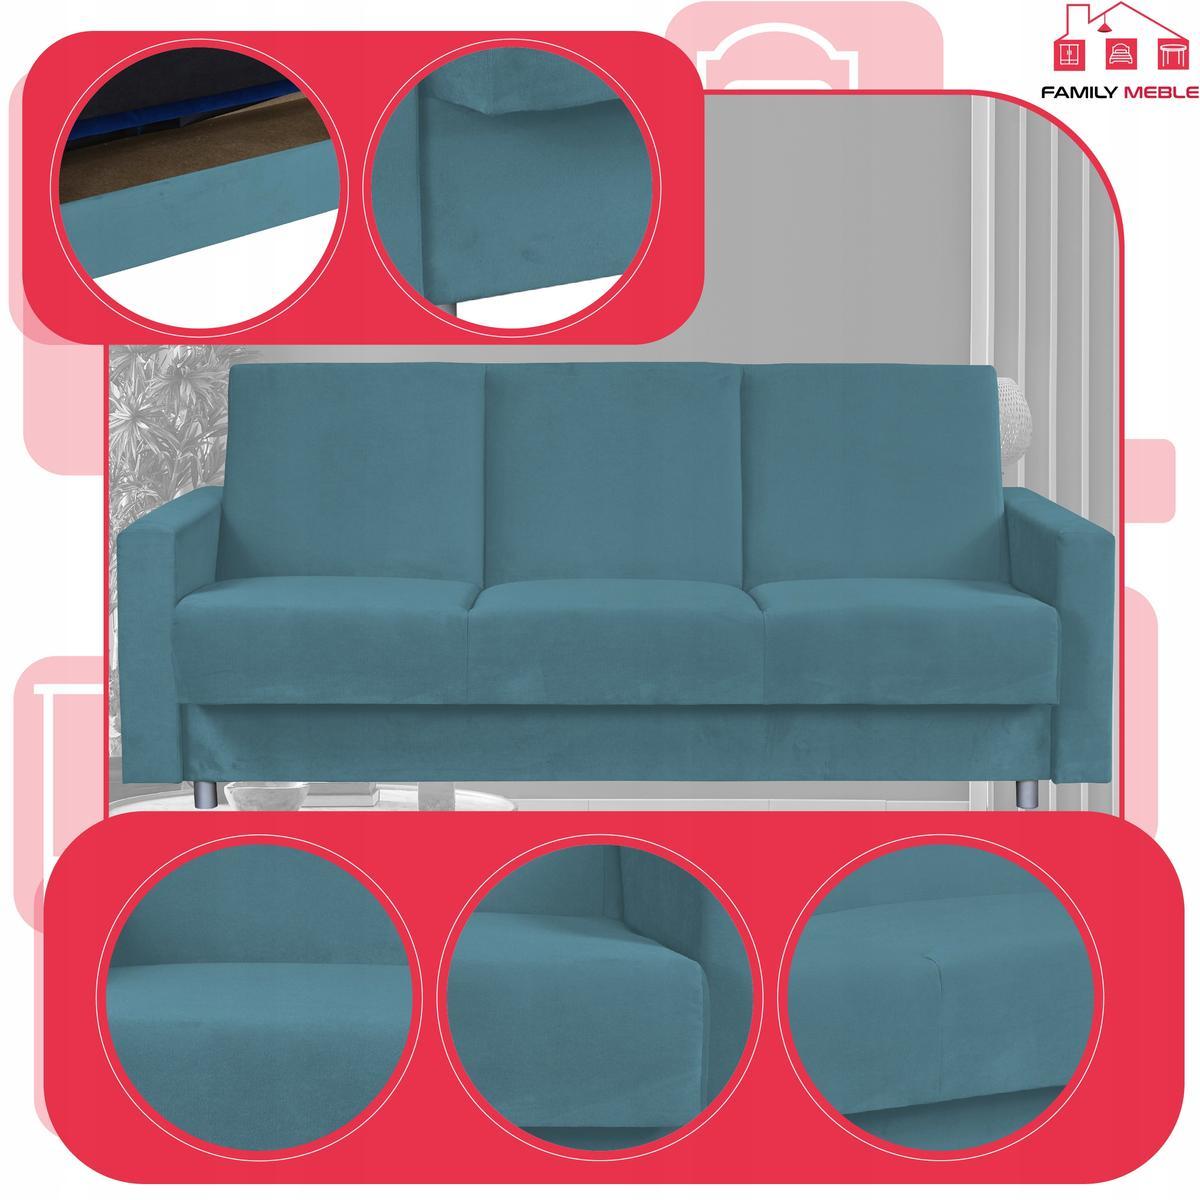 Wersalka sofa kanapa rozkładana Alicja FamilyMeble 3 Full Screen